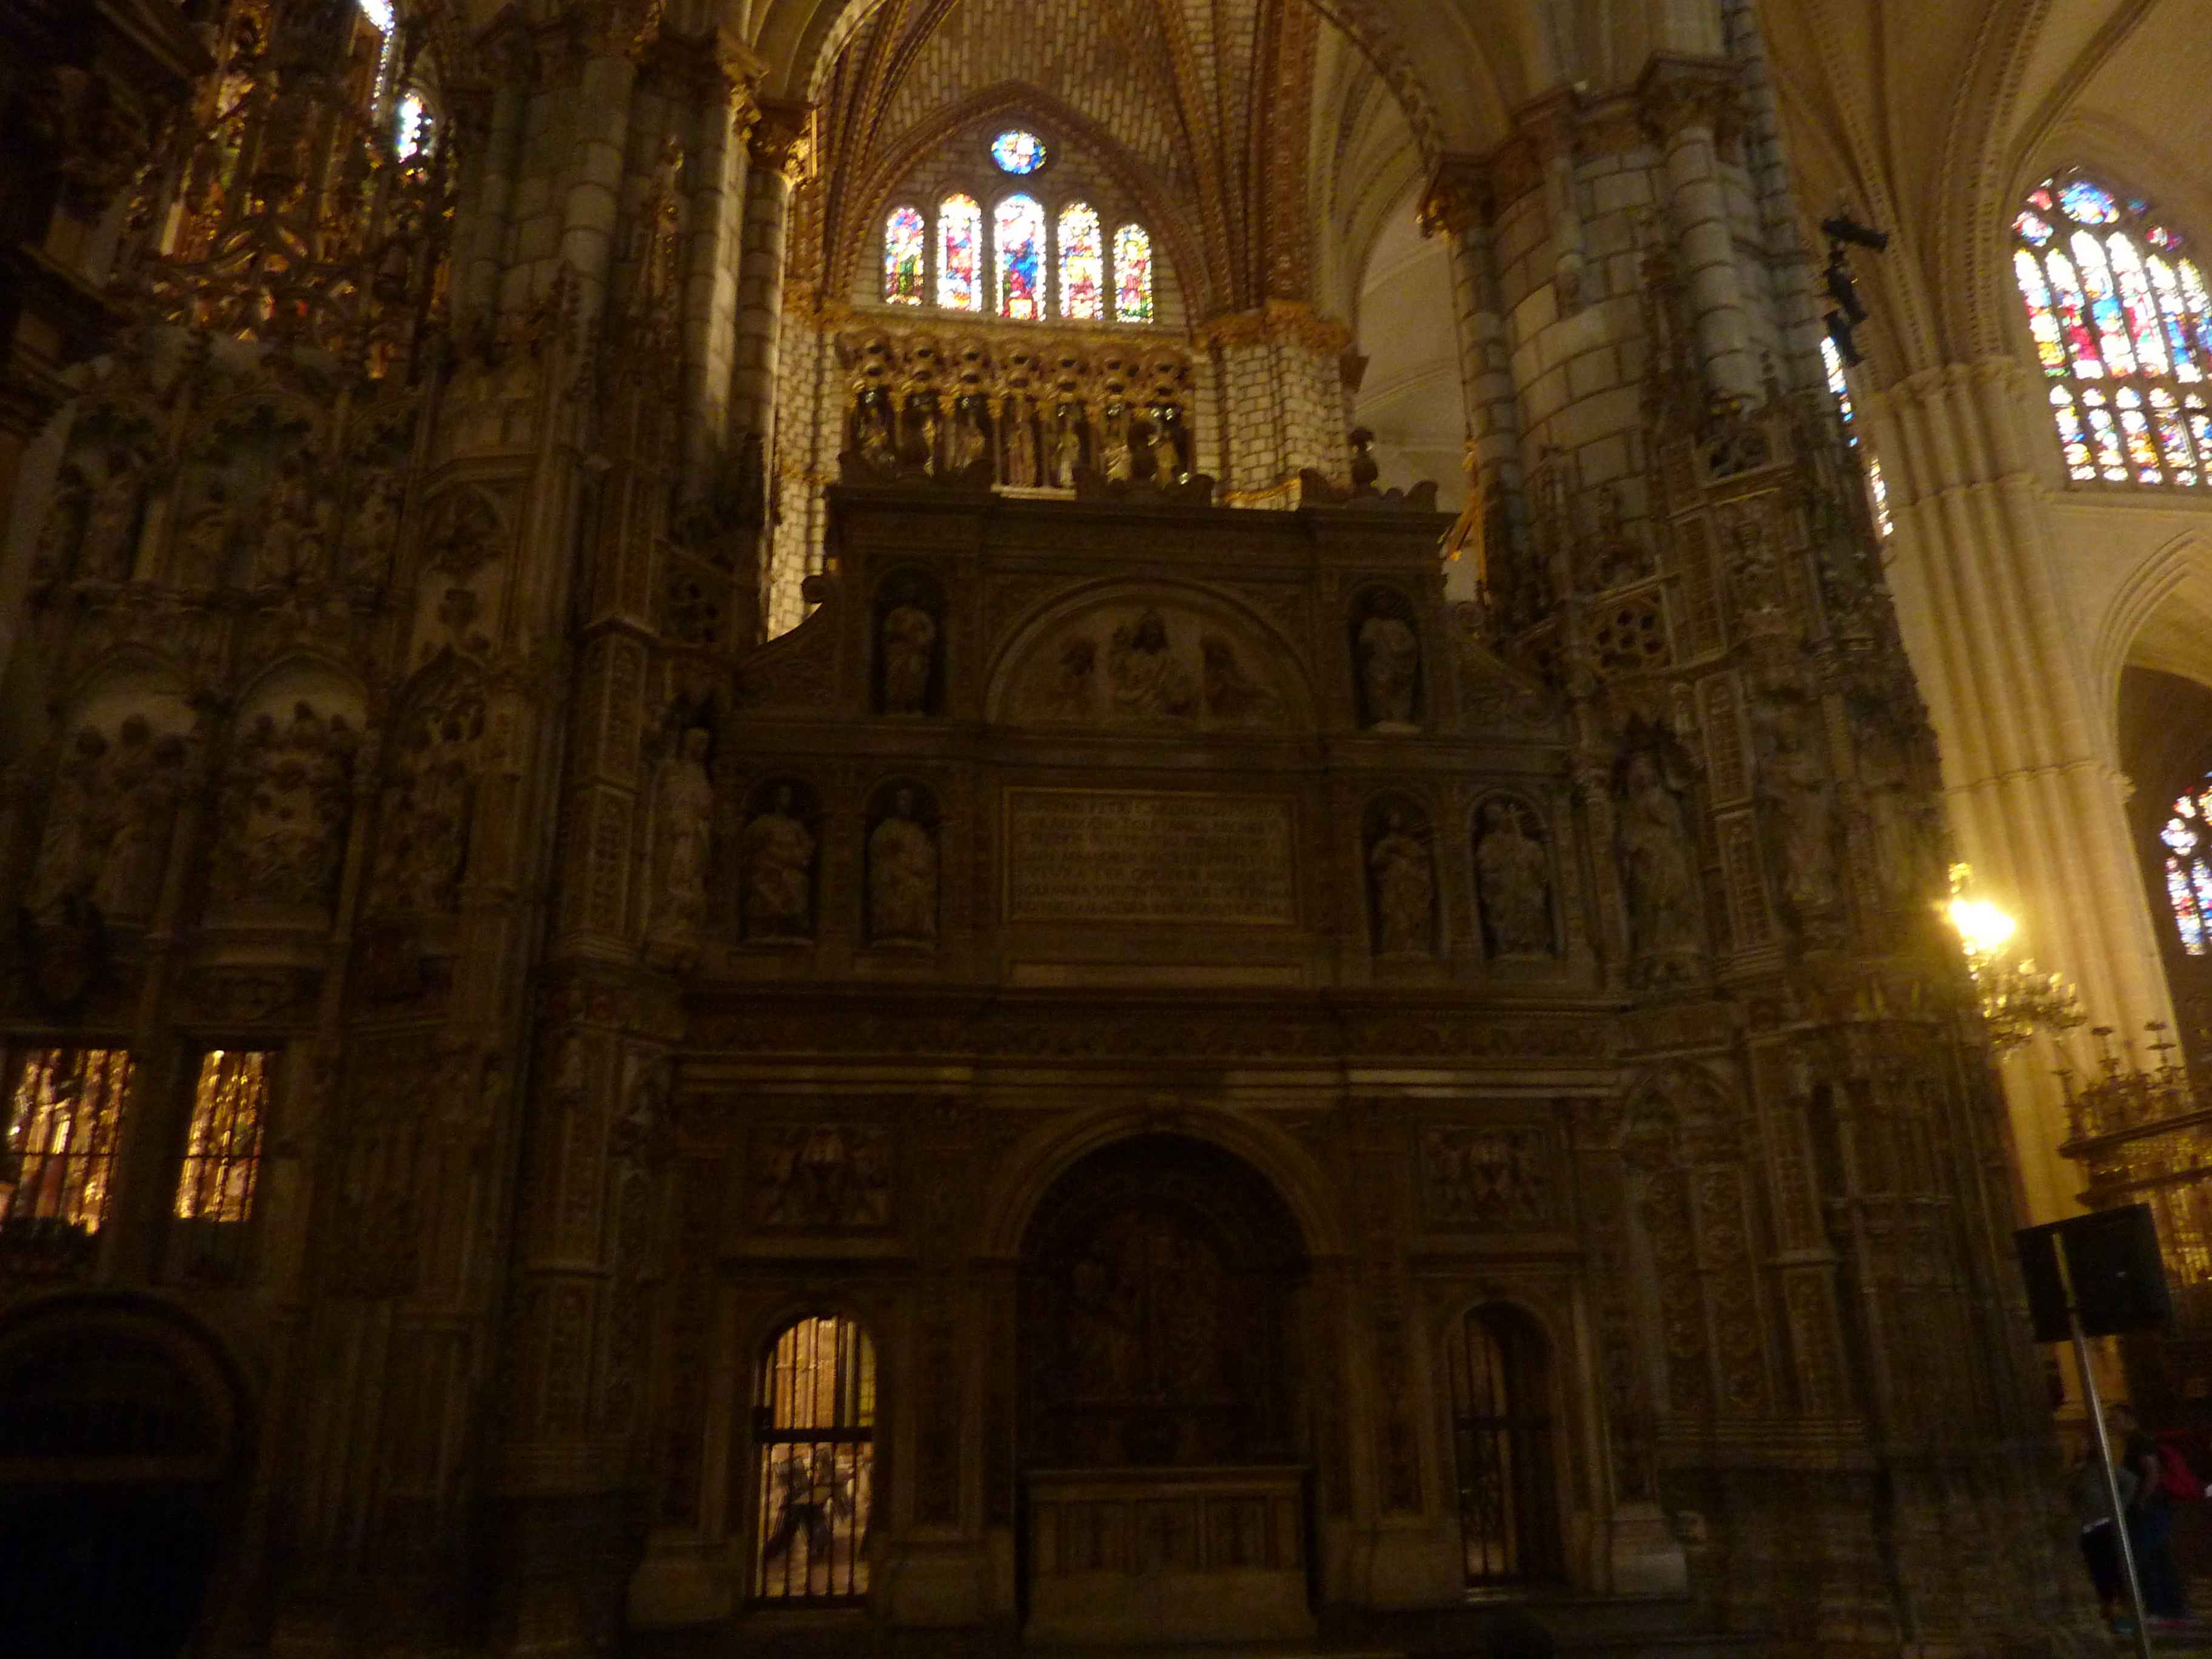 Interieur Cathedrale De Tolede en Images